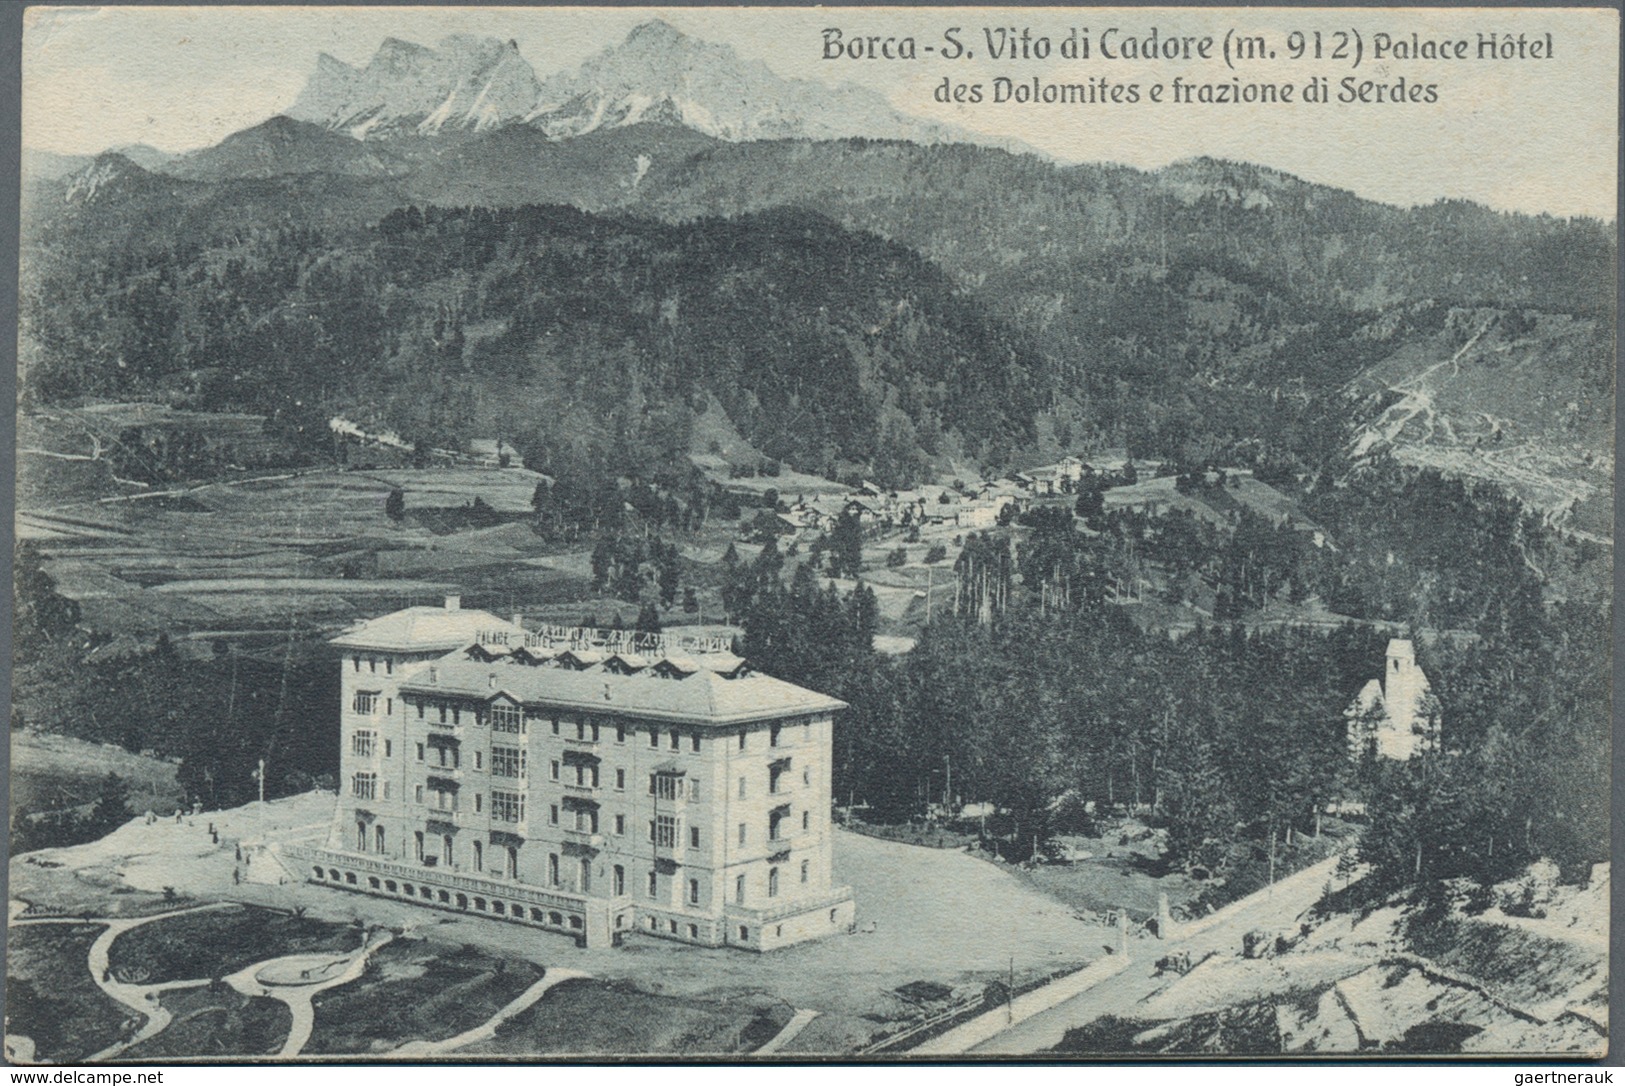 Holyland: 1908, "HOTEL DOLOMITES BORCA S. VITO (BELLUNO)" Cds. On Palace Hotel Postcard To Jerusalem - Palestina